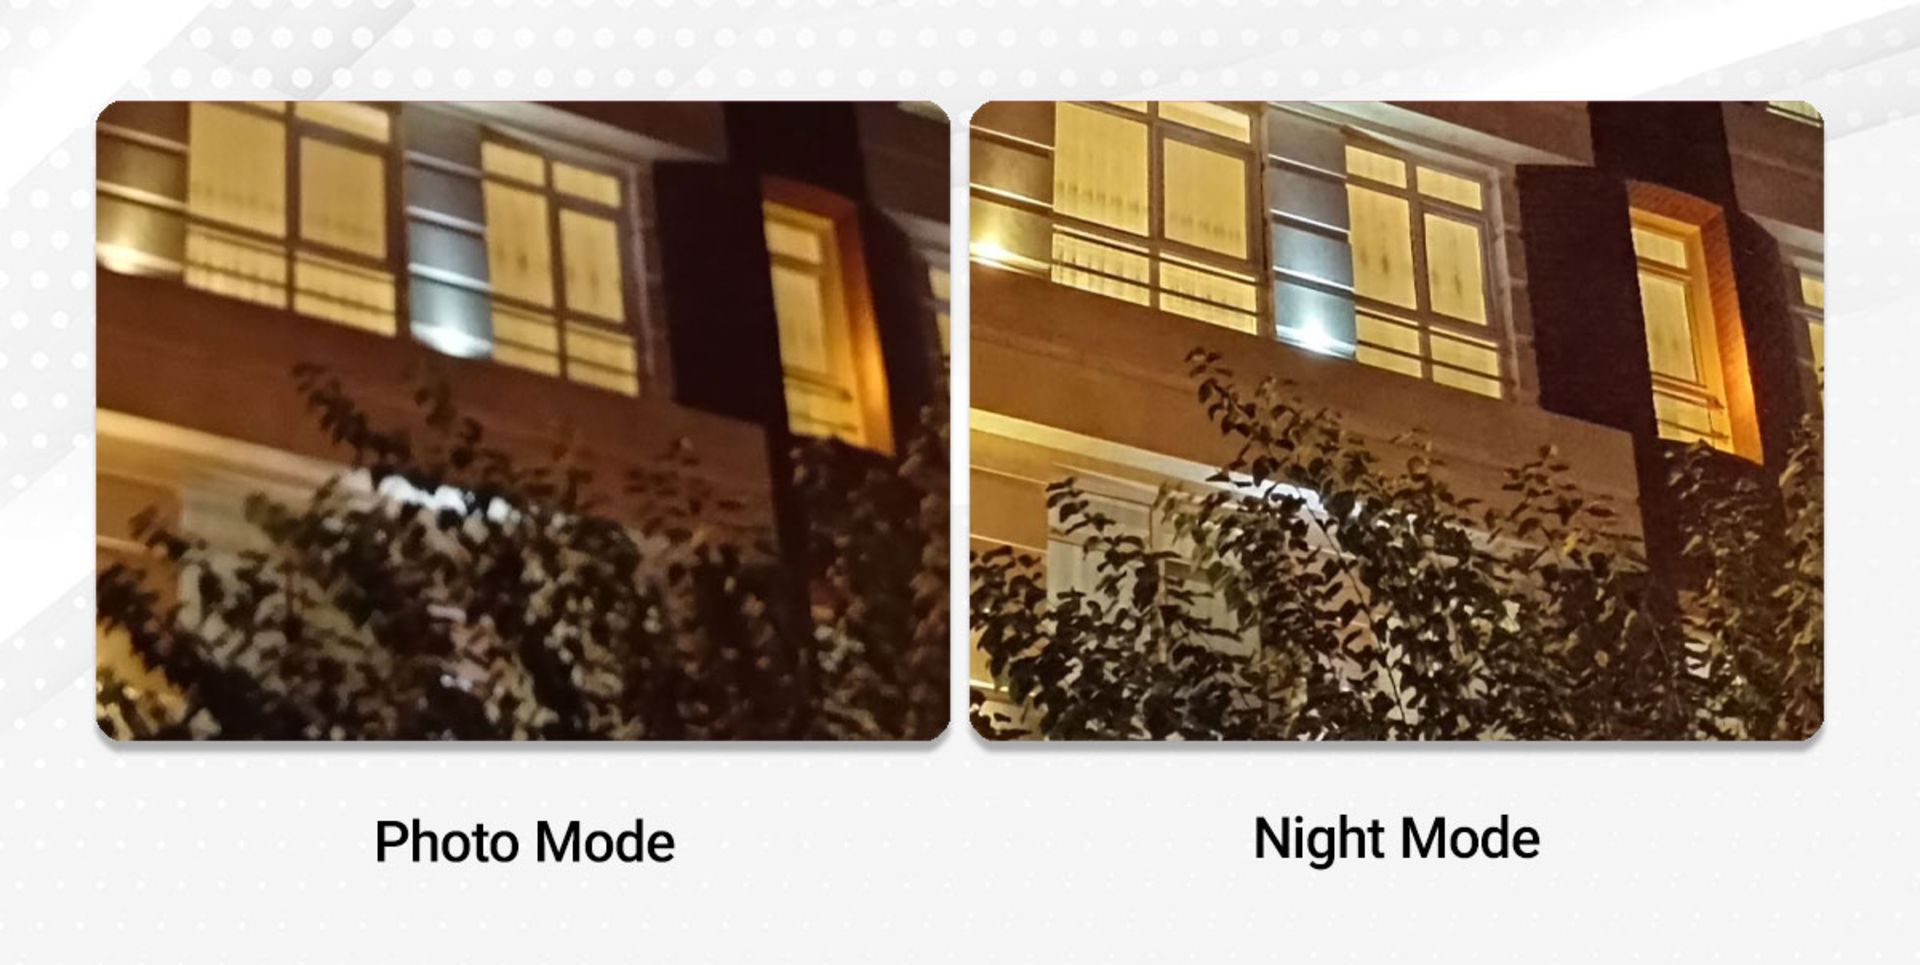 نمونه عکس دوربین اصلی ردمی نوت ۹ در حالت Photo و Night